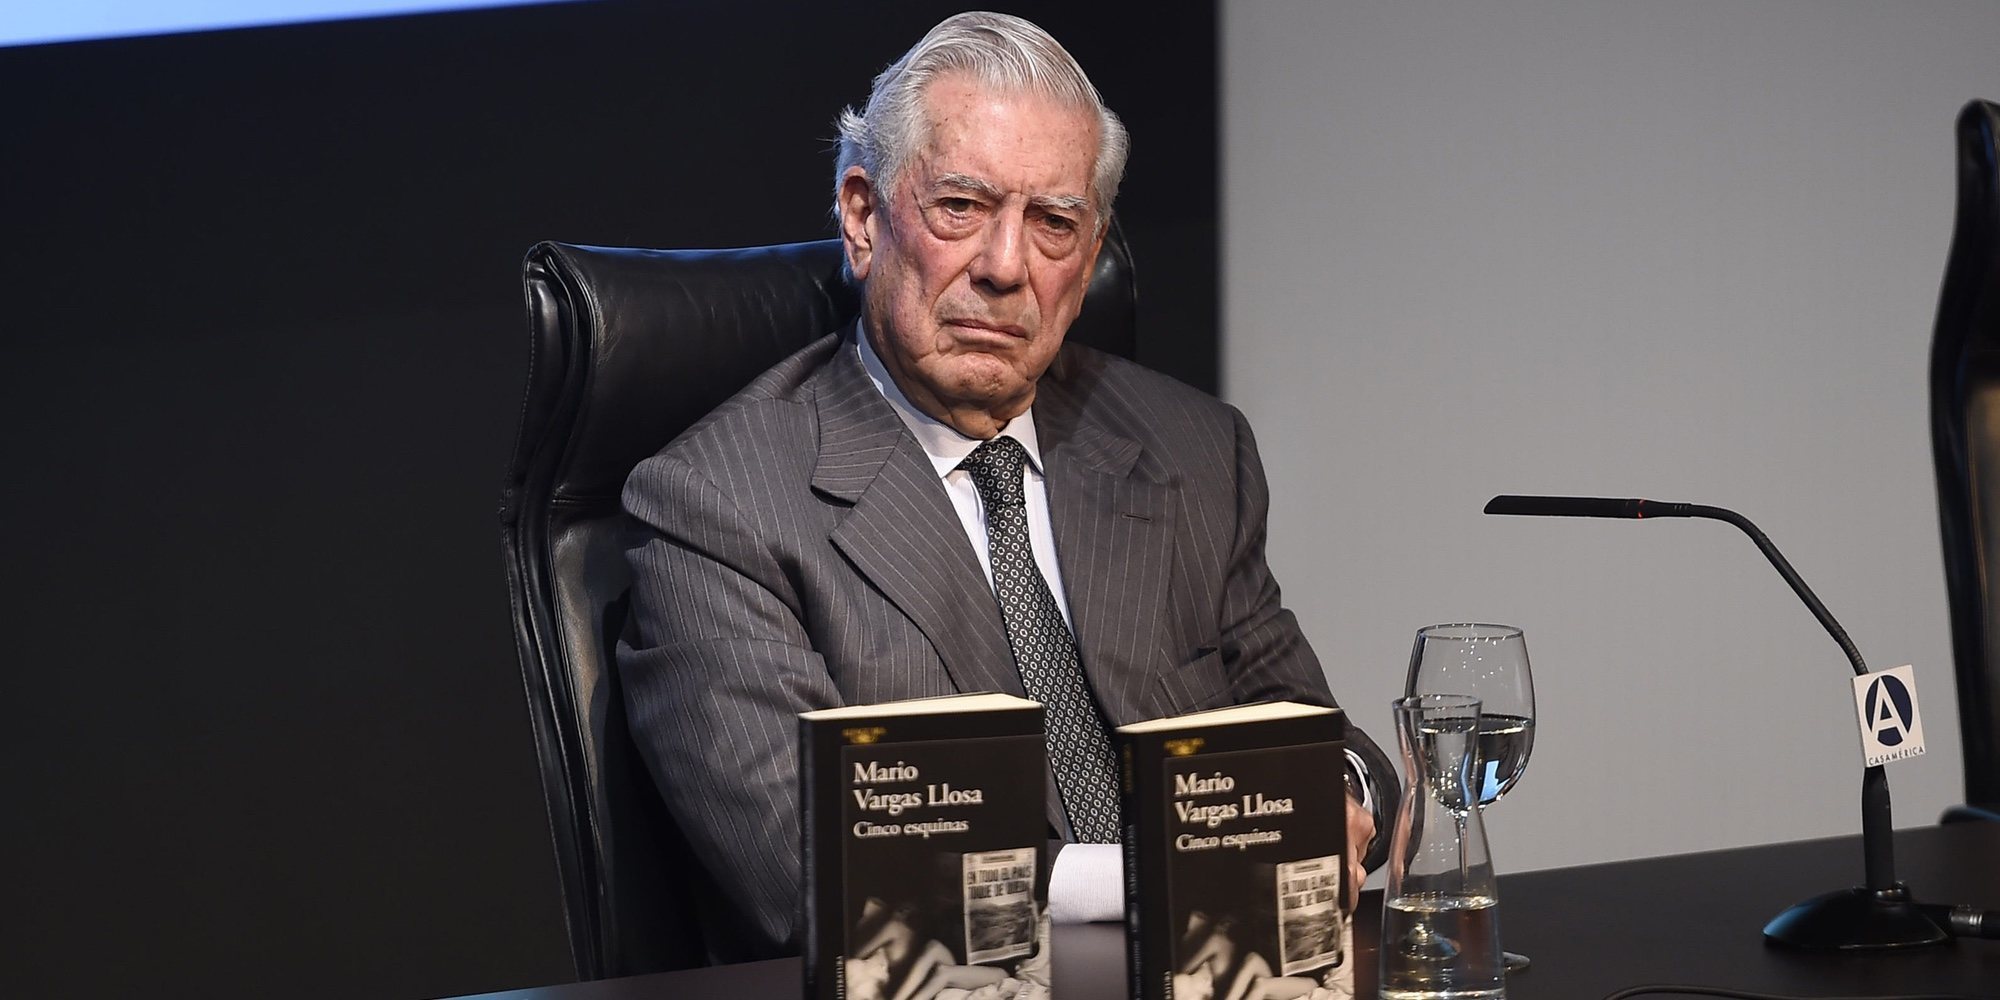 Mario Vargas Llosa defiende el sexo en la vejez: "No desaparece, solo se espacia más"